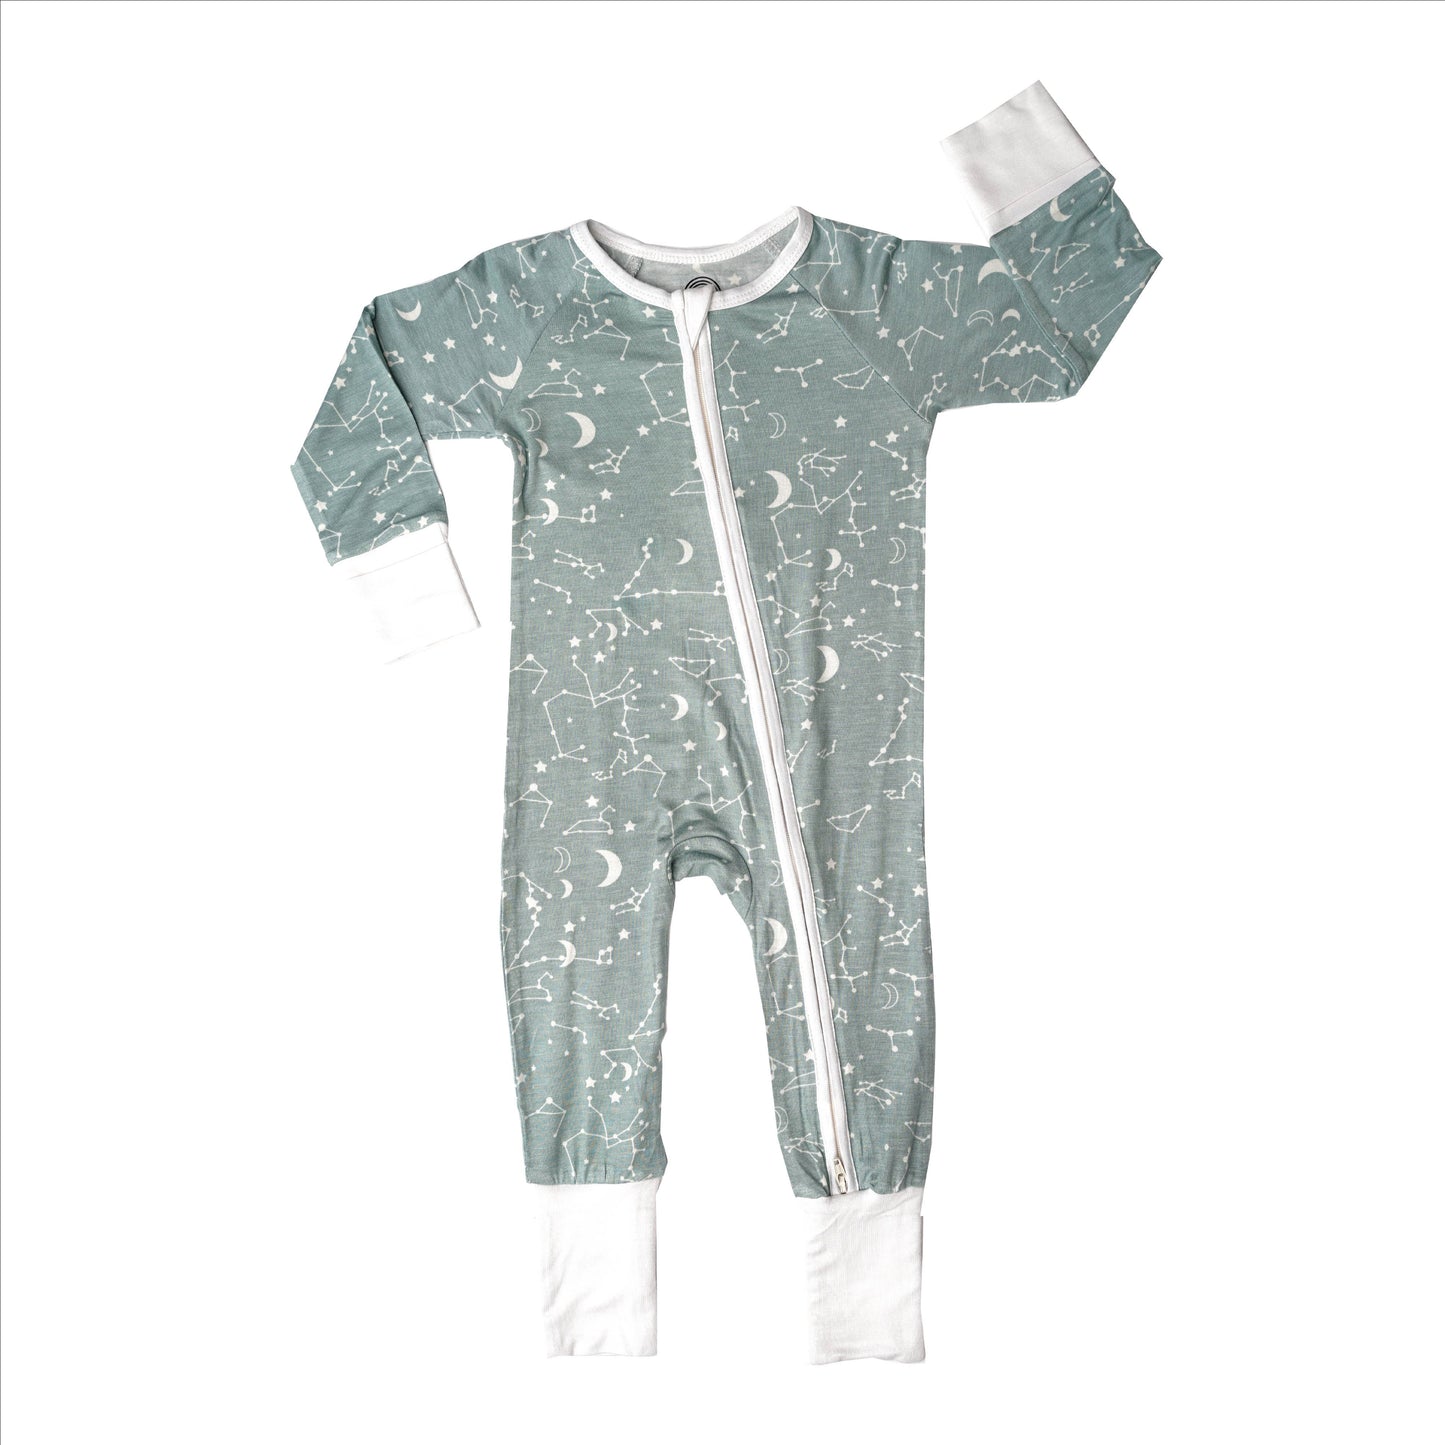 Stargazer Pijamas de bambú neutros Pijamas para bebés Pijamas Footie